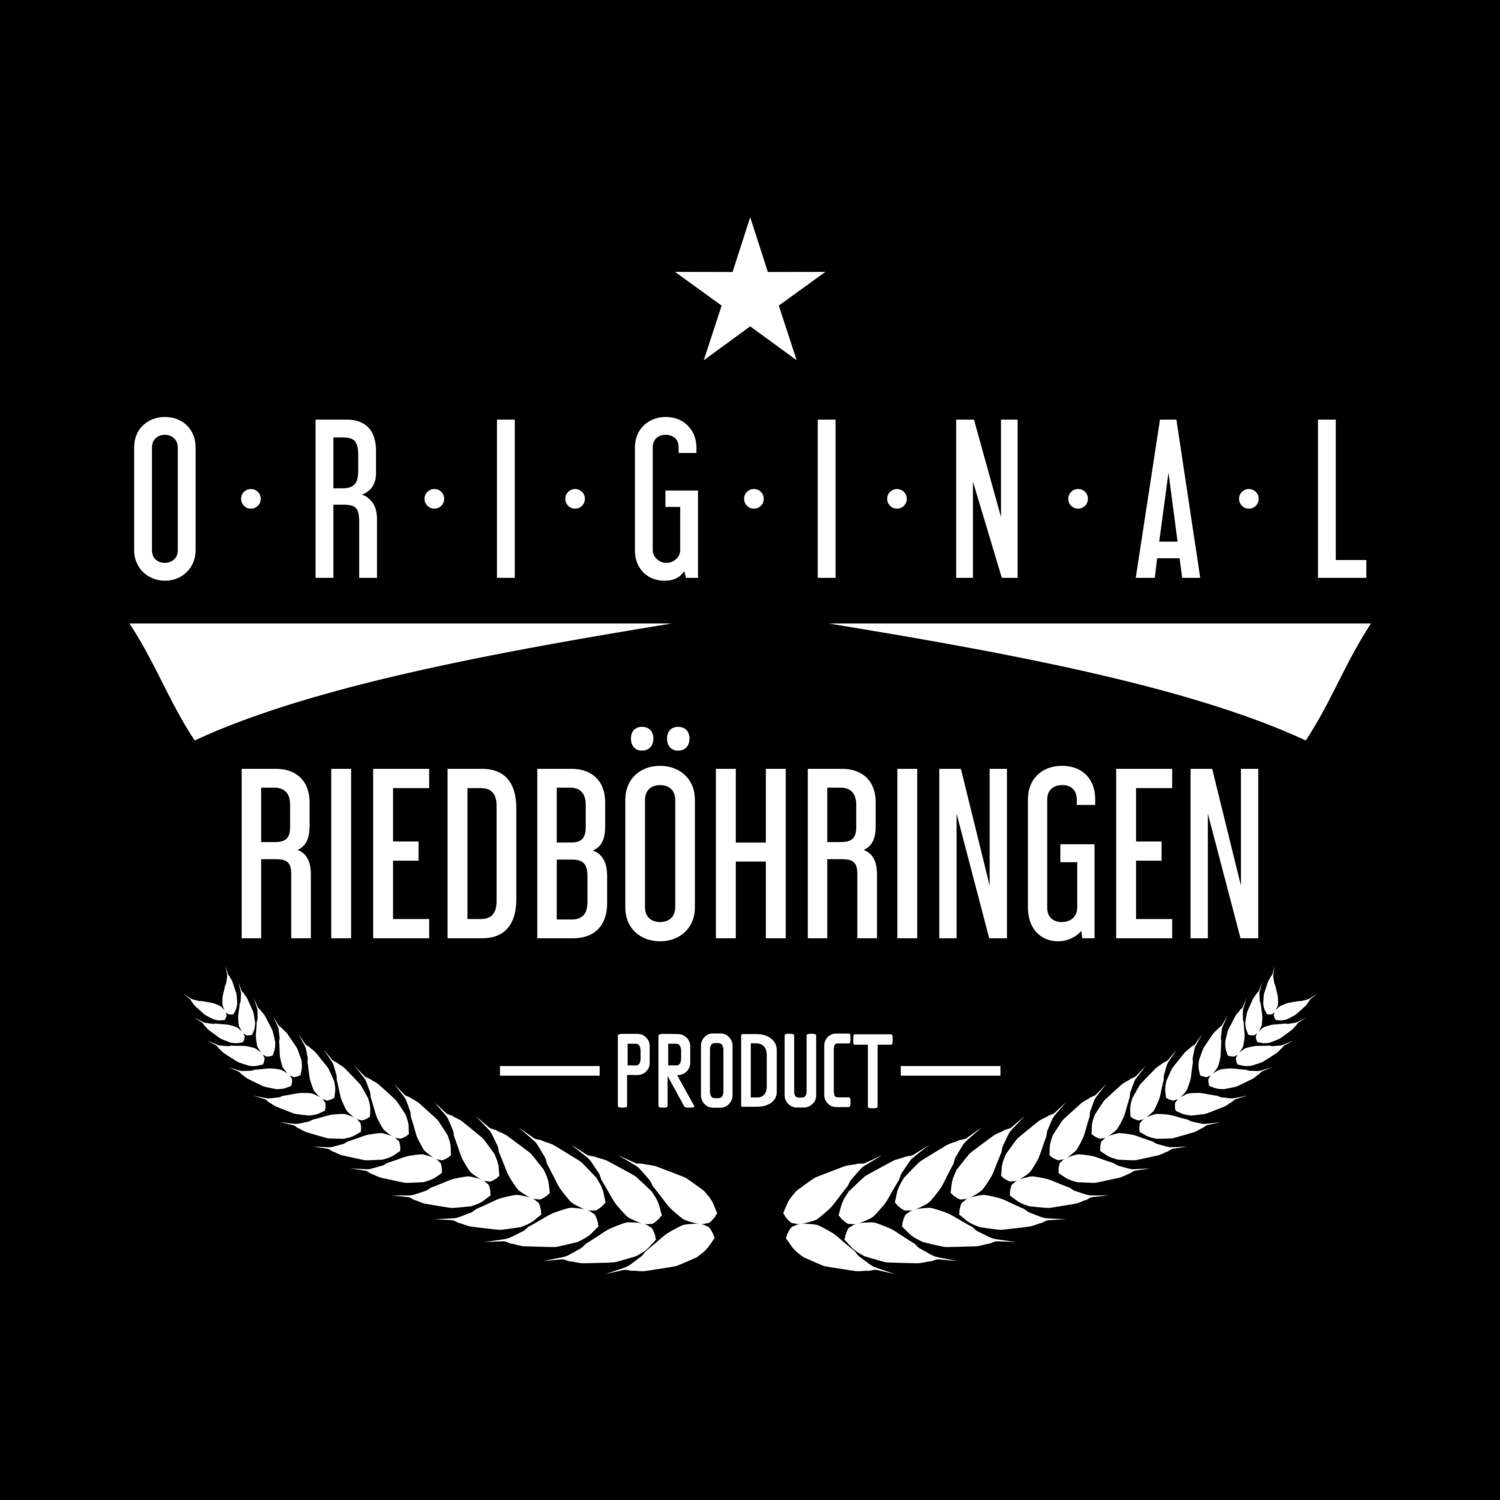 Riedböhringen T-Shirt »Original Product«